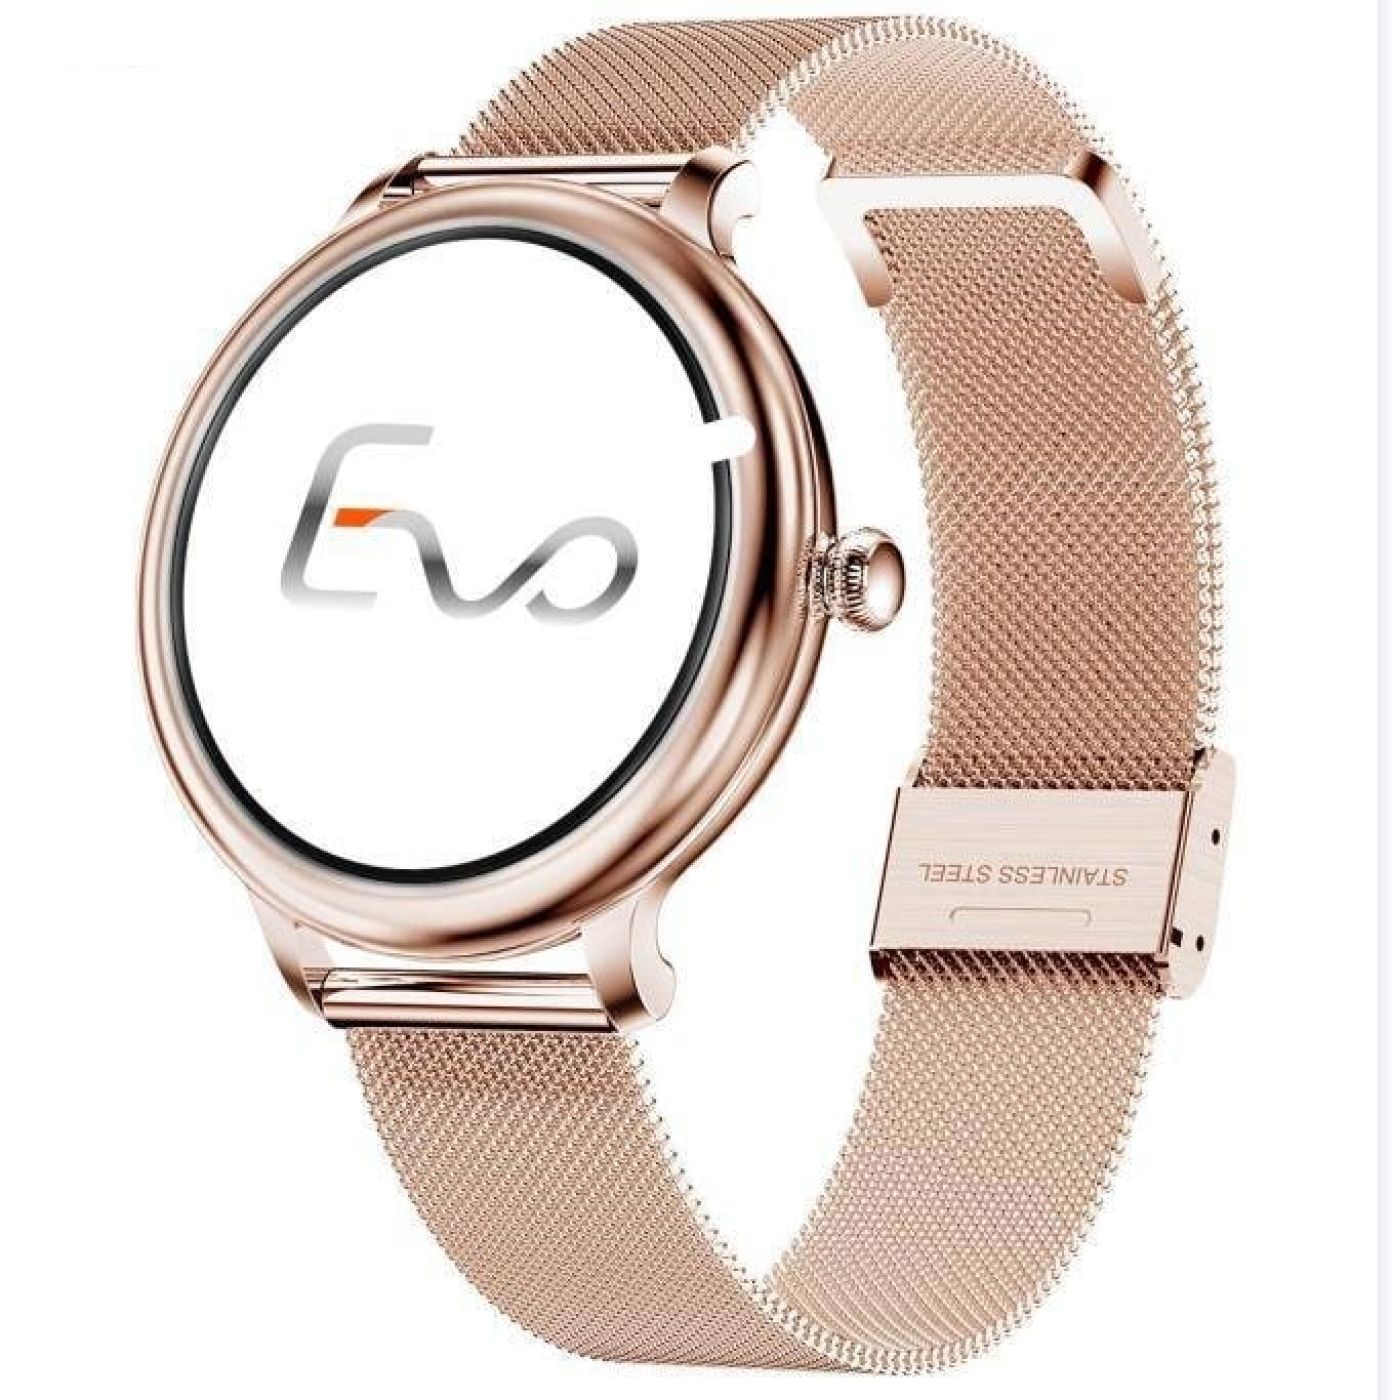 Đồng hồ thông minh Evo Ny02 dành cho phái nữ